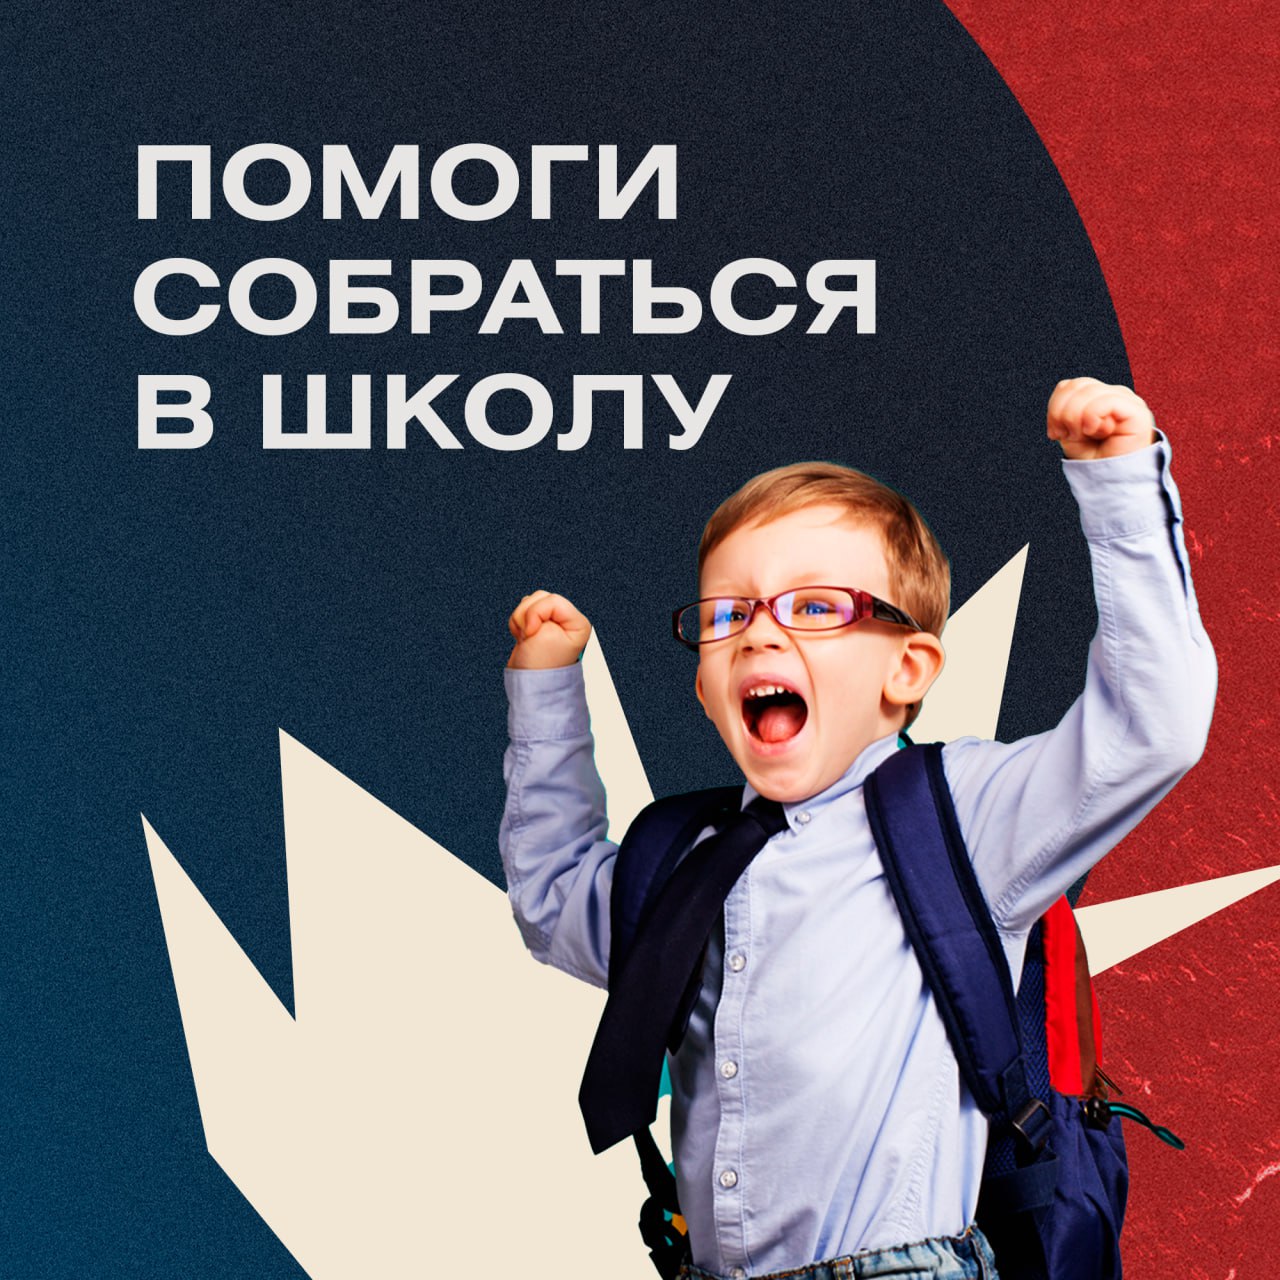  изображение для новости Попечительский совет УлГУ поддержал акцию "Помоги собраться в школу"